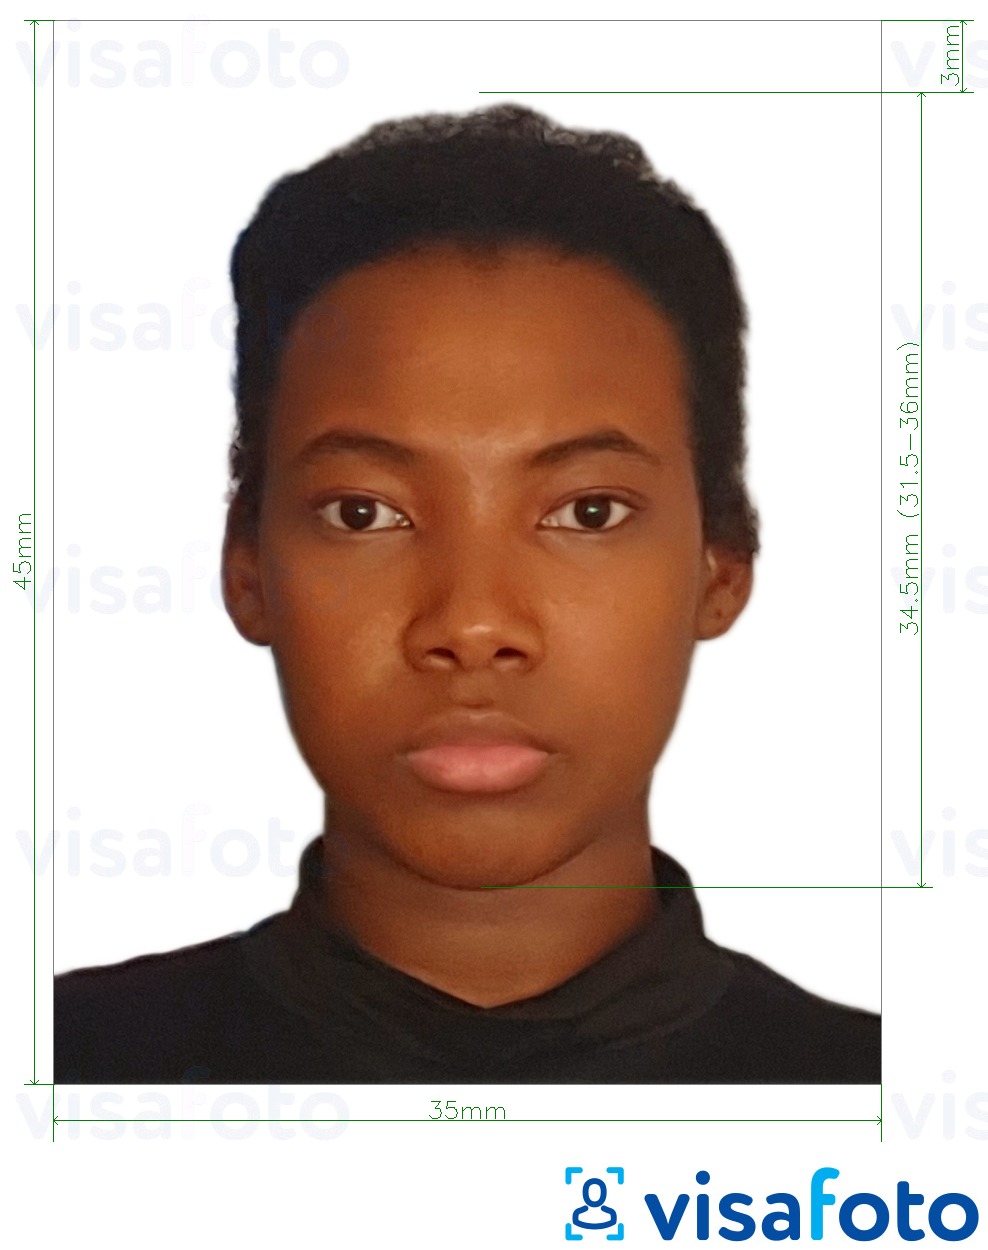 Voorbeeld van foto voor Nigeria visum 3,5x4,5 cm (35x45 mm) met exacte maatspecificatie